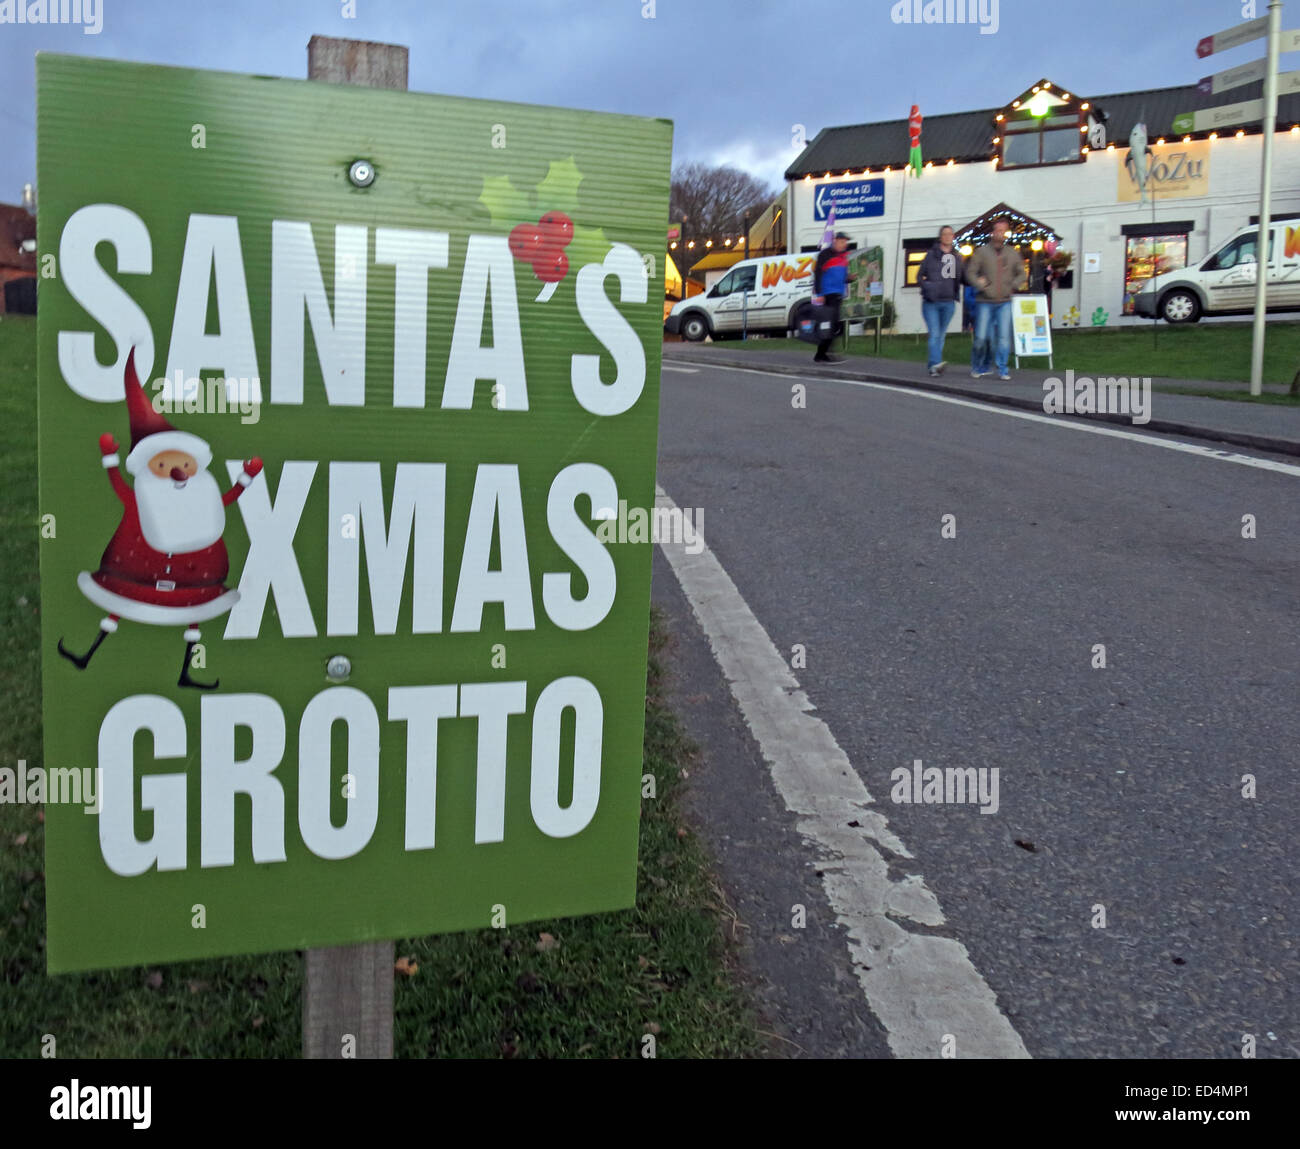 Weihnachtsmann Xmas Grotte Zeichen, weist uns den Weg am Straßenrand. Immer früher jedes Jahr Stockfoto